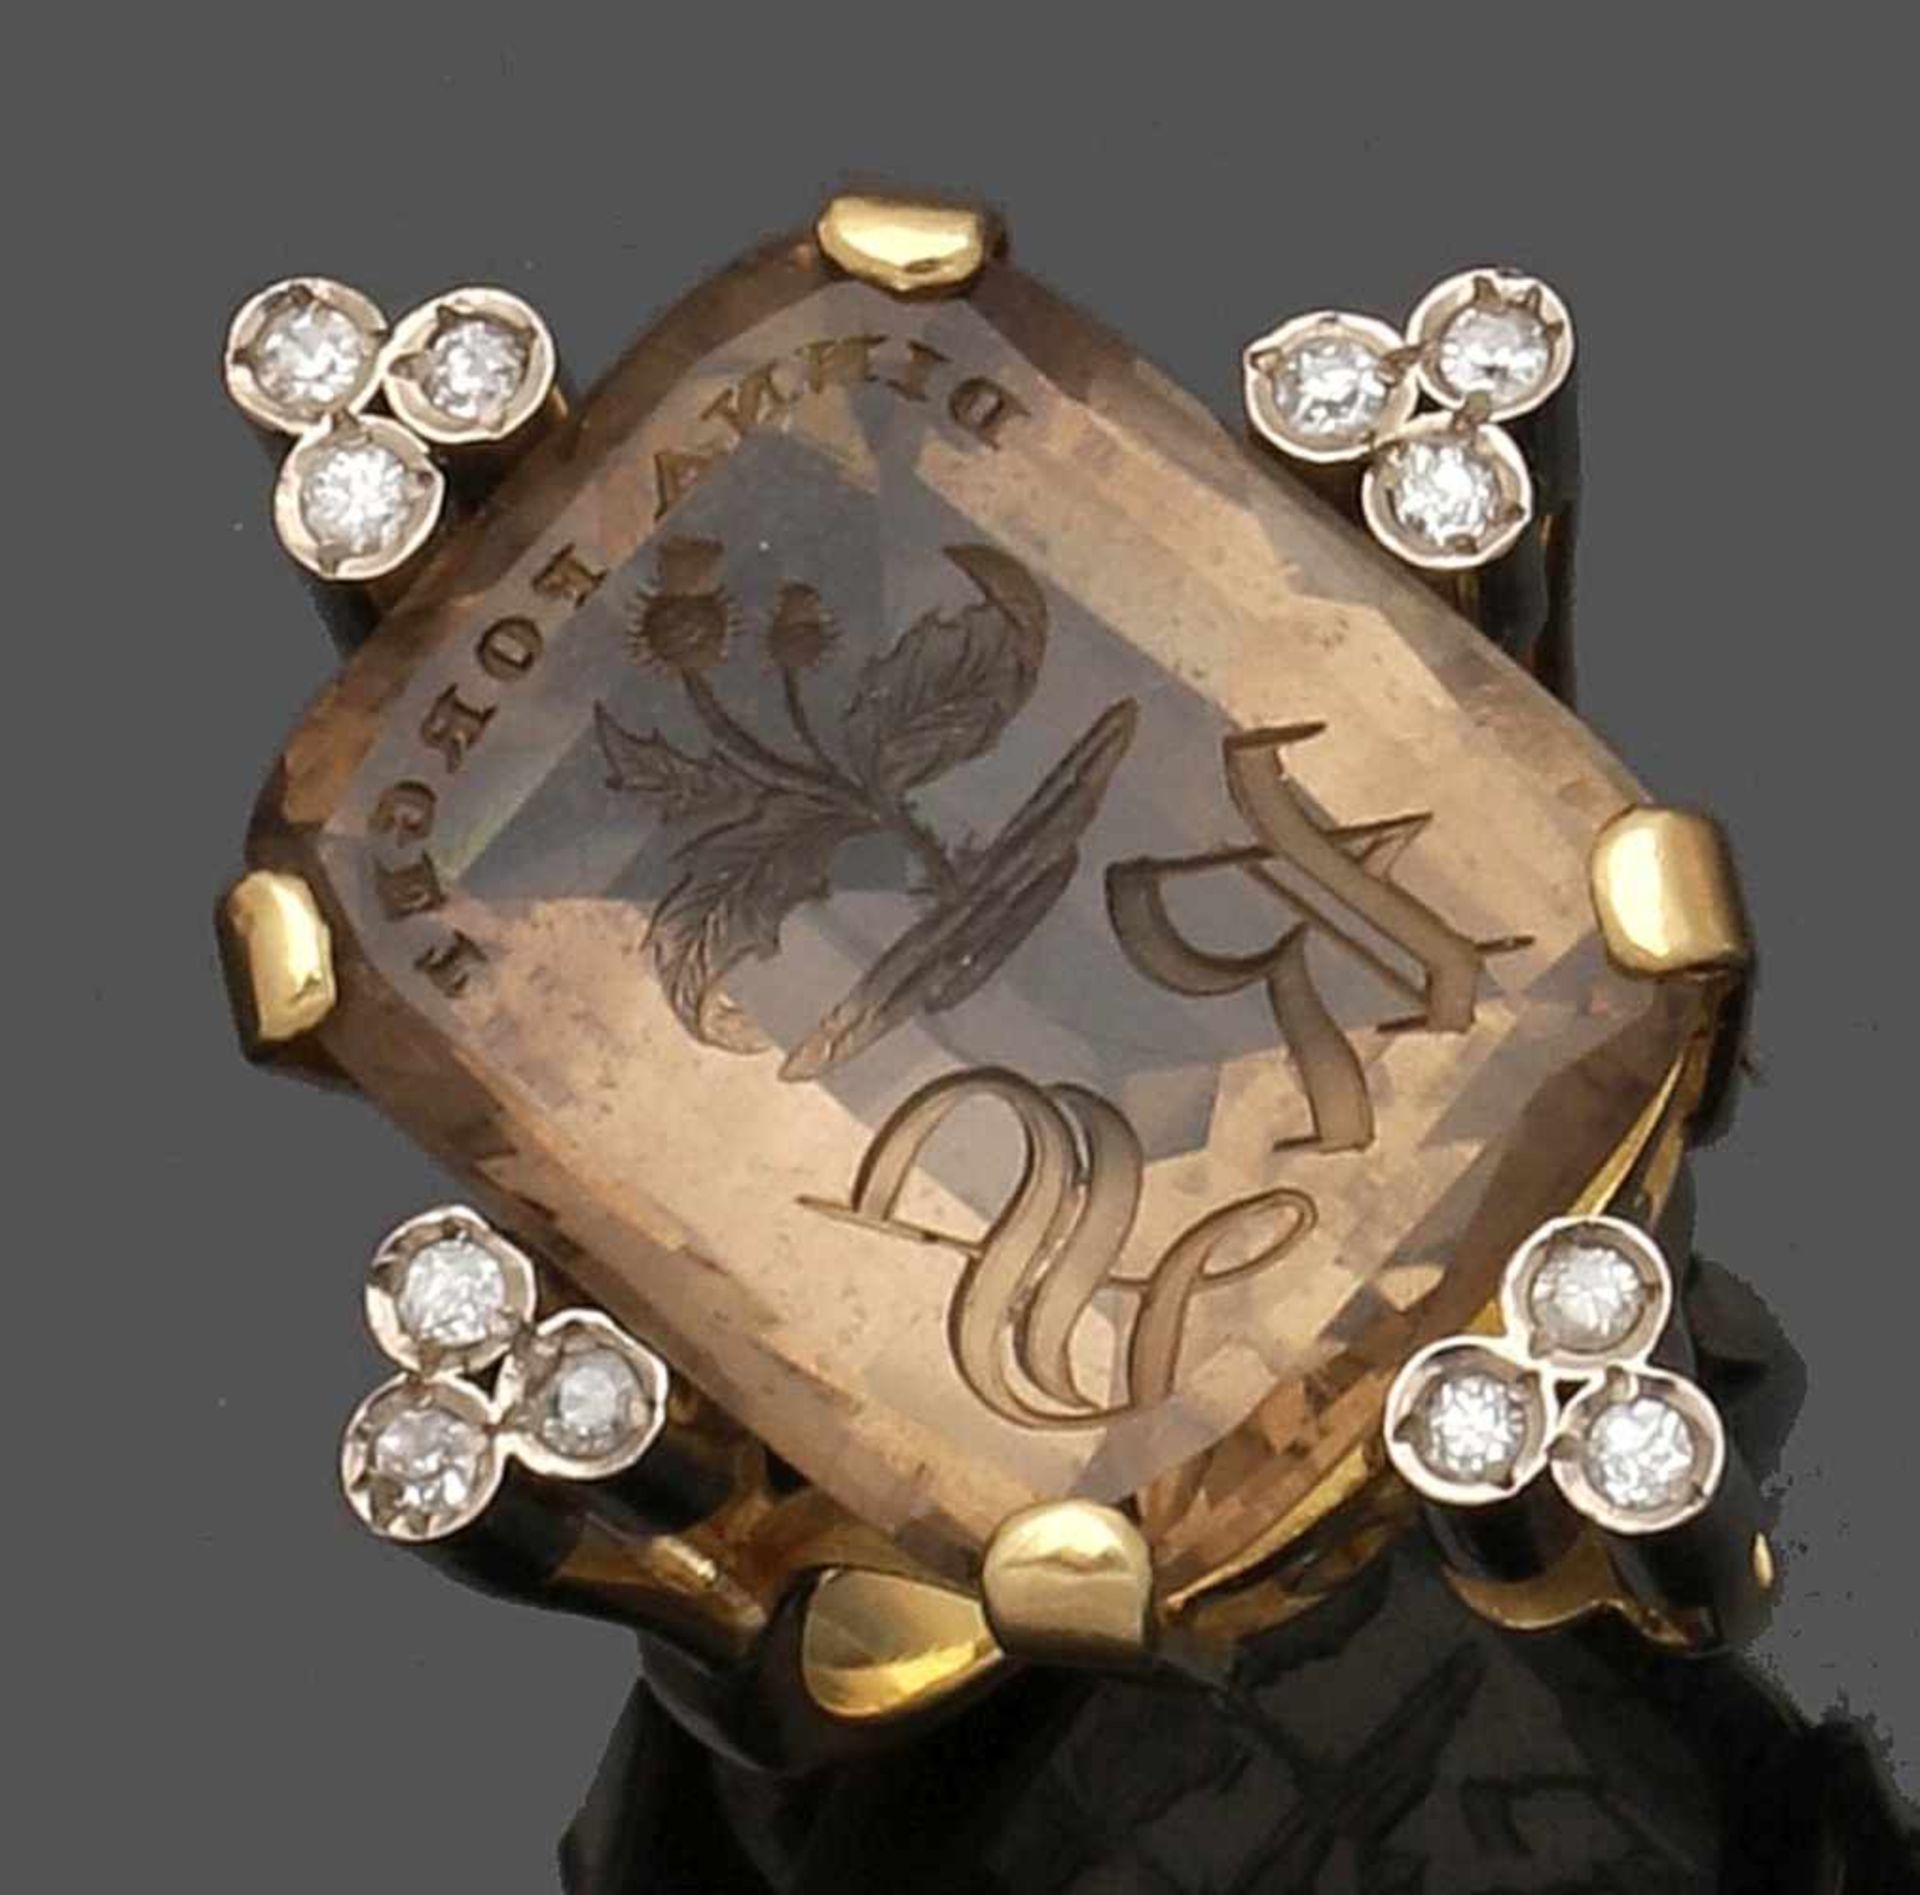 Außergewöhnlicher Siegelring mit einem gravierten RauchquarzA smokey quartz signet ring "Dinna